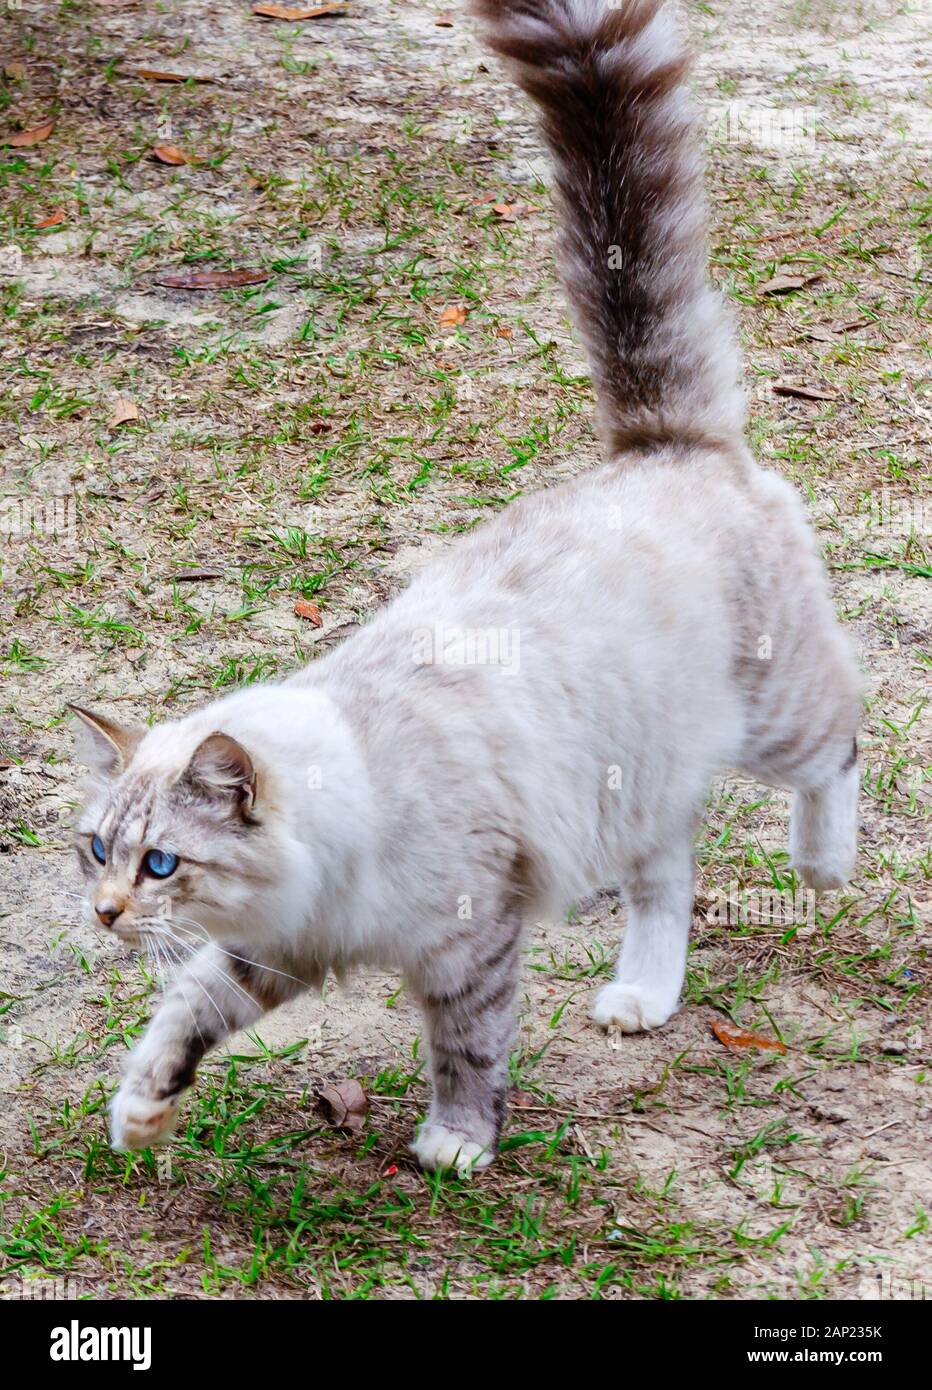 Un poil long silver tabby cat marche à travers un chantier, 13 janvier 2020, dans l'Alabama, Coden. Banque D'Images